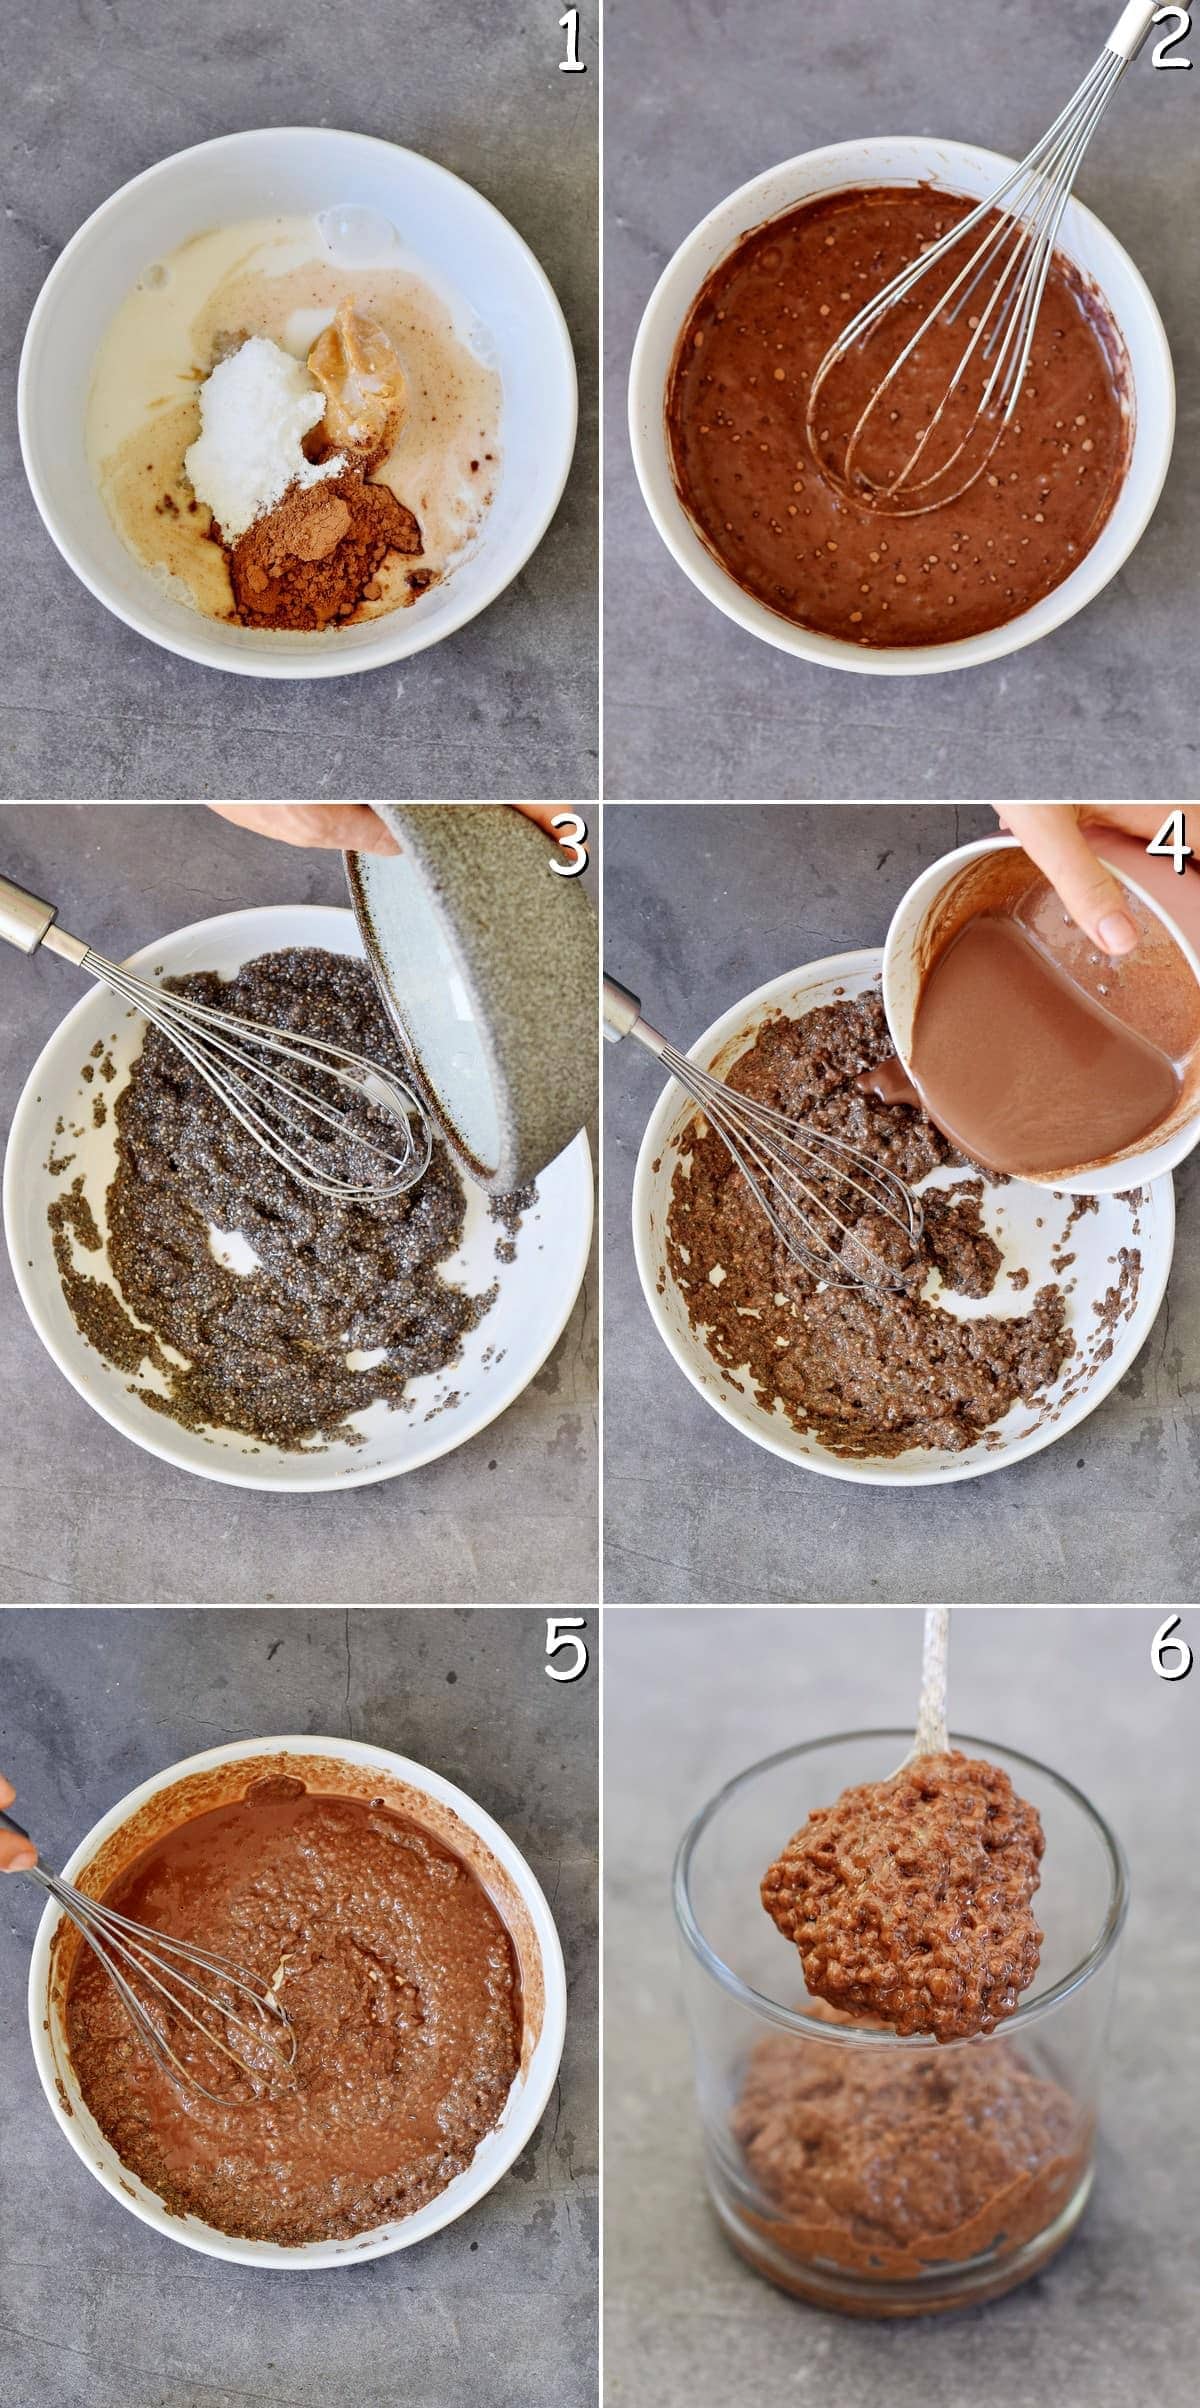 6 Schritt-Für-Schritt Fotos von der Herstellung von Schoko Chia Pudding